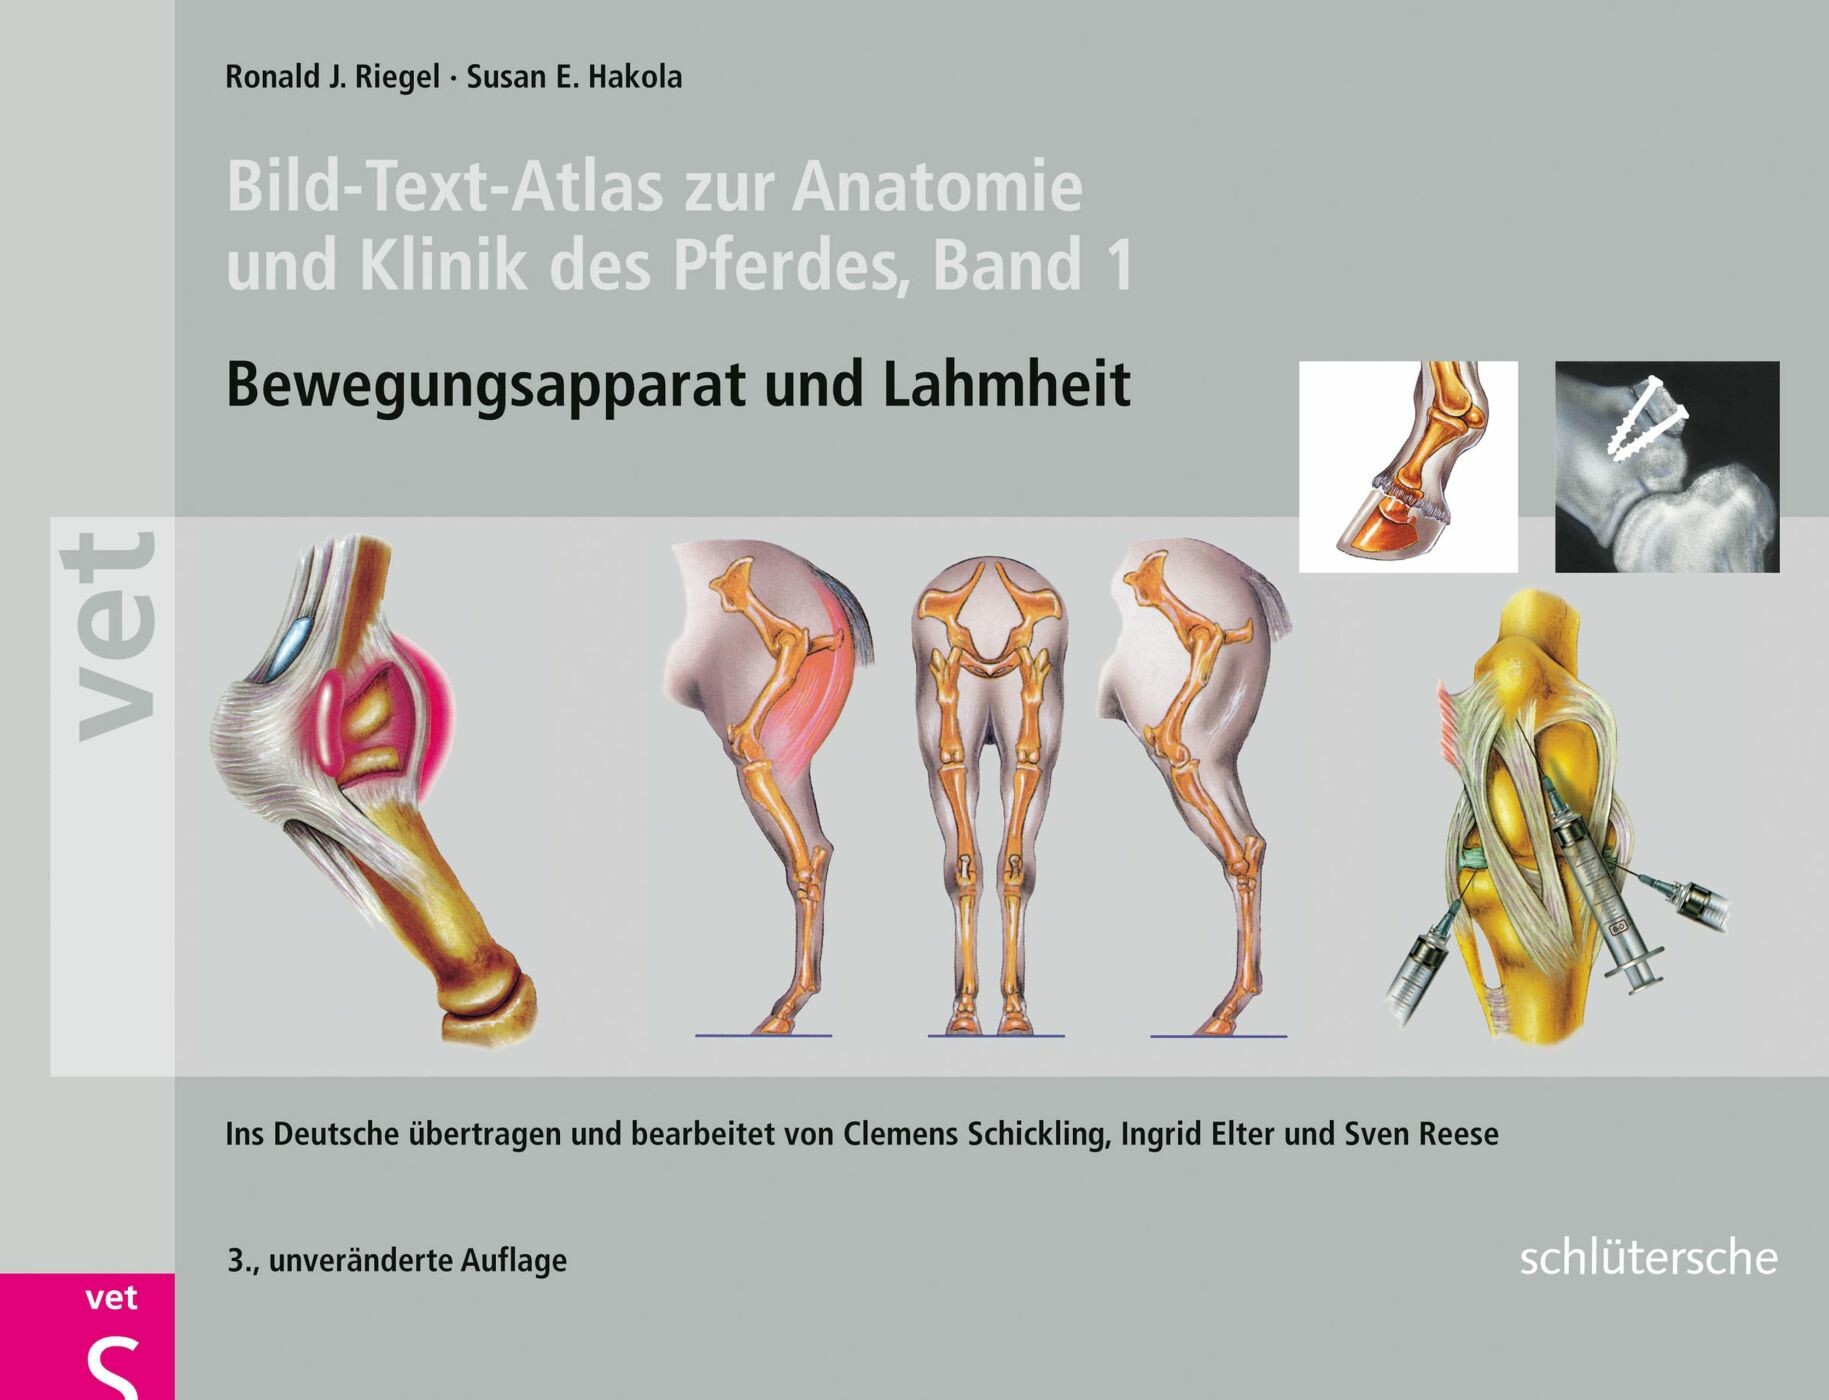 Cover Bild-Text-Atlas zur Anatomie und Klinik des Pferdes